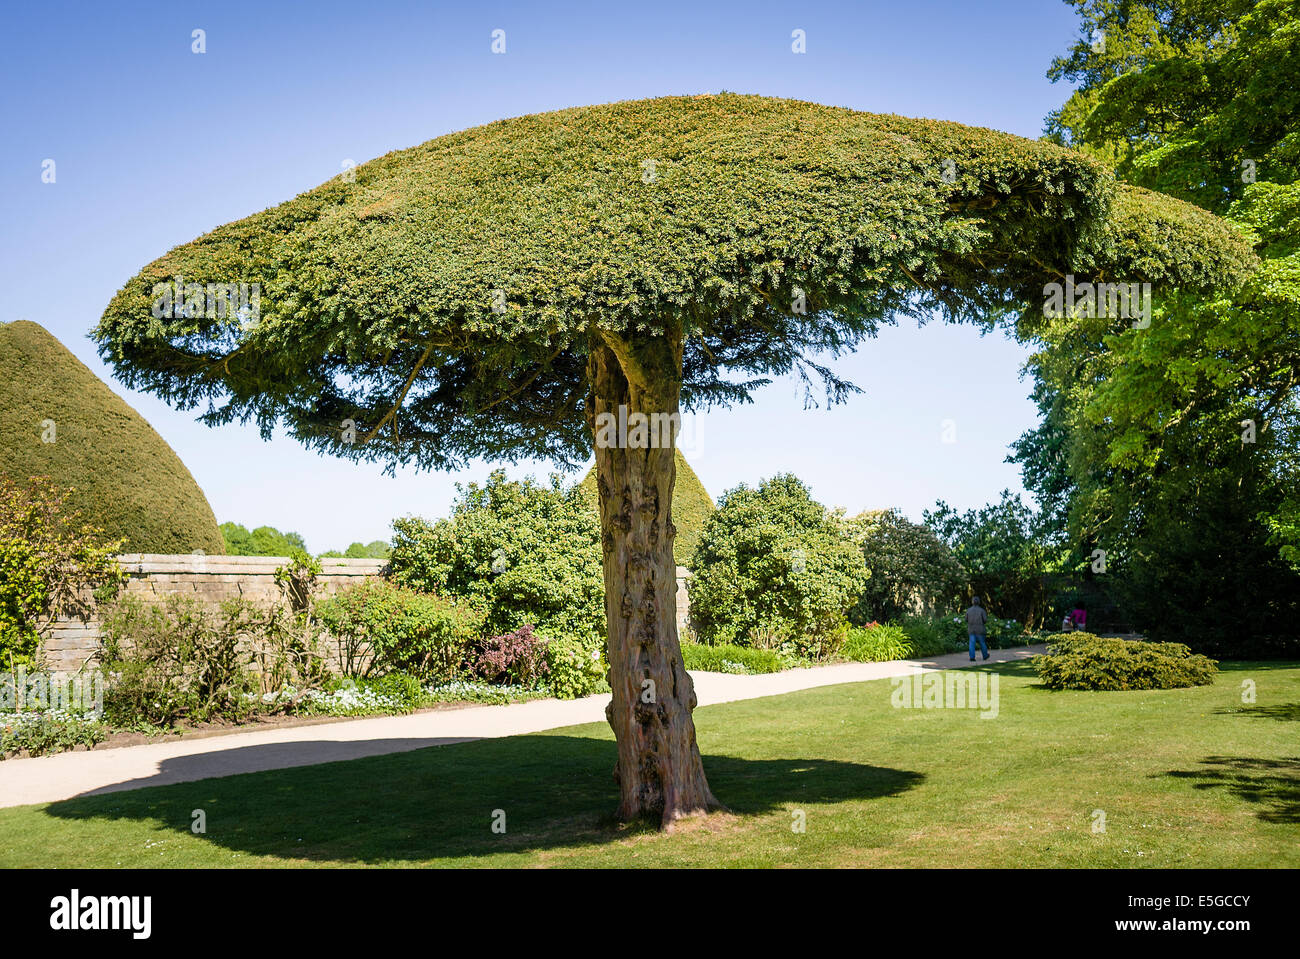 Umbrella albero immagini e fotografie stock ad alta risoluzione - Alamy